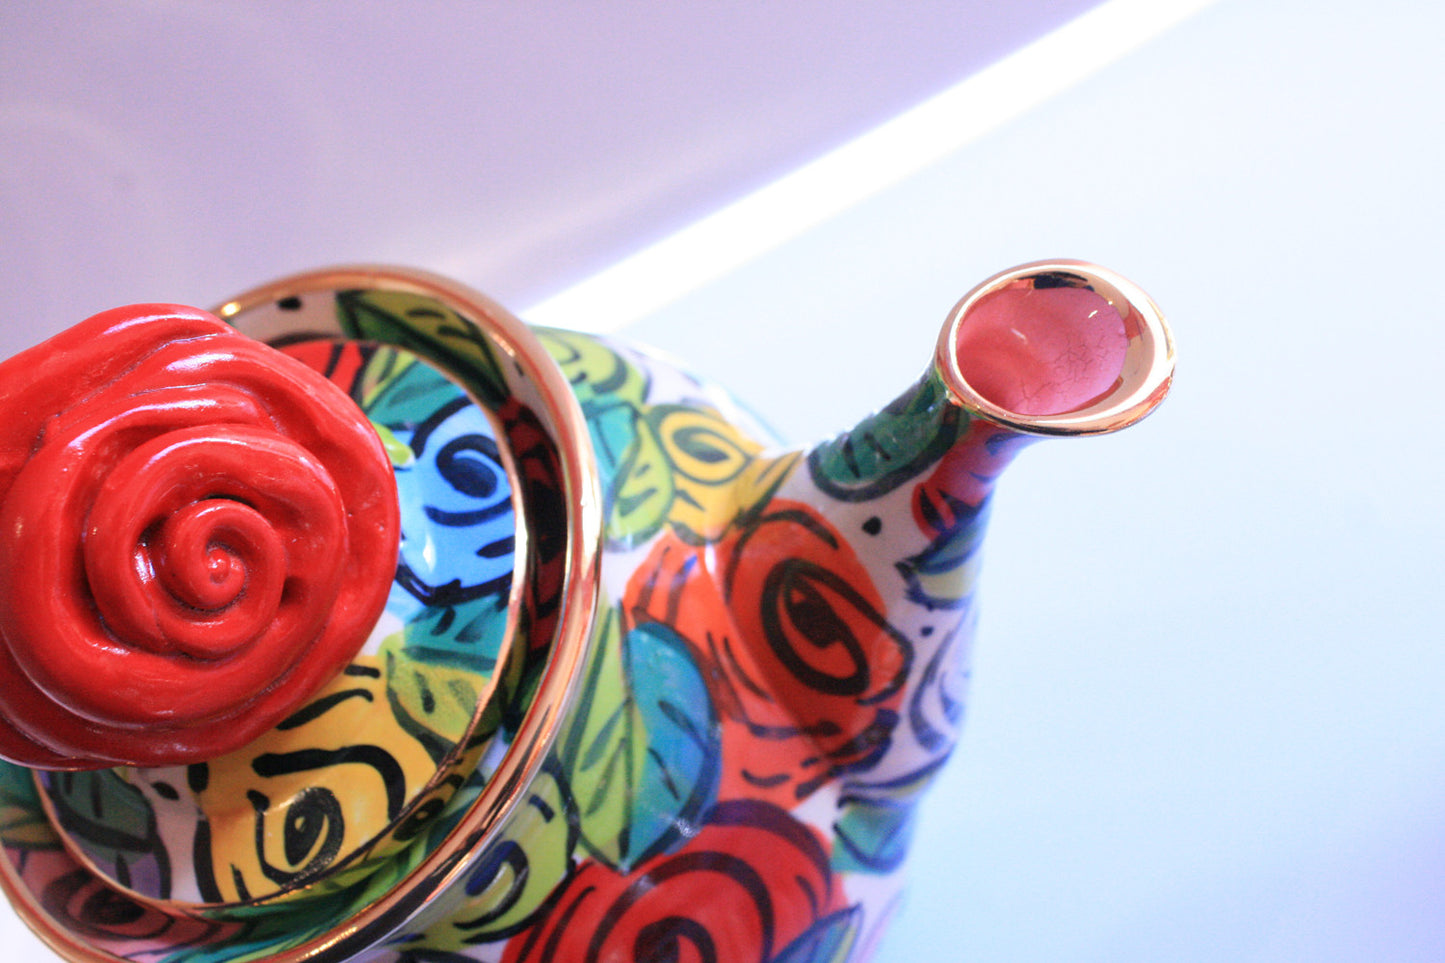 Rose Footed Teapot Original Rose Design - MaryRoseYoung